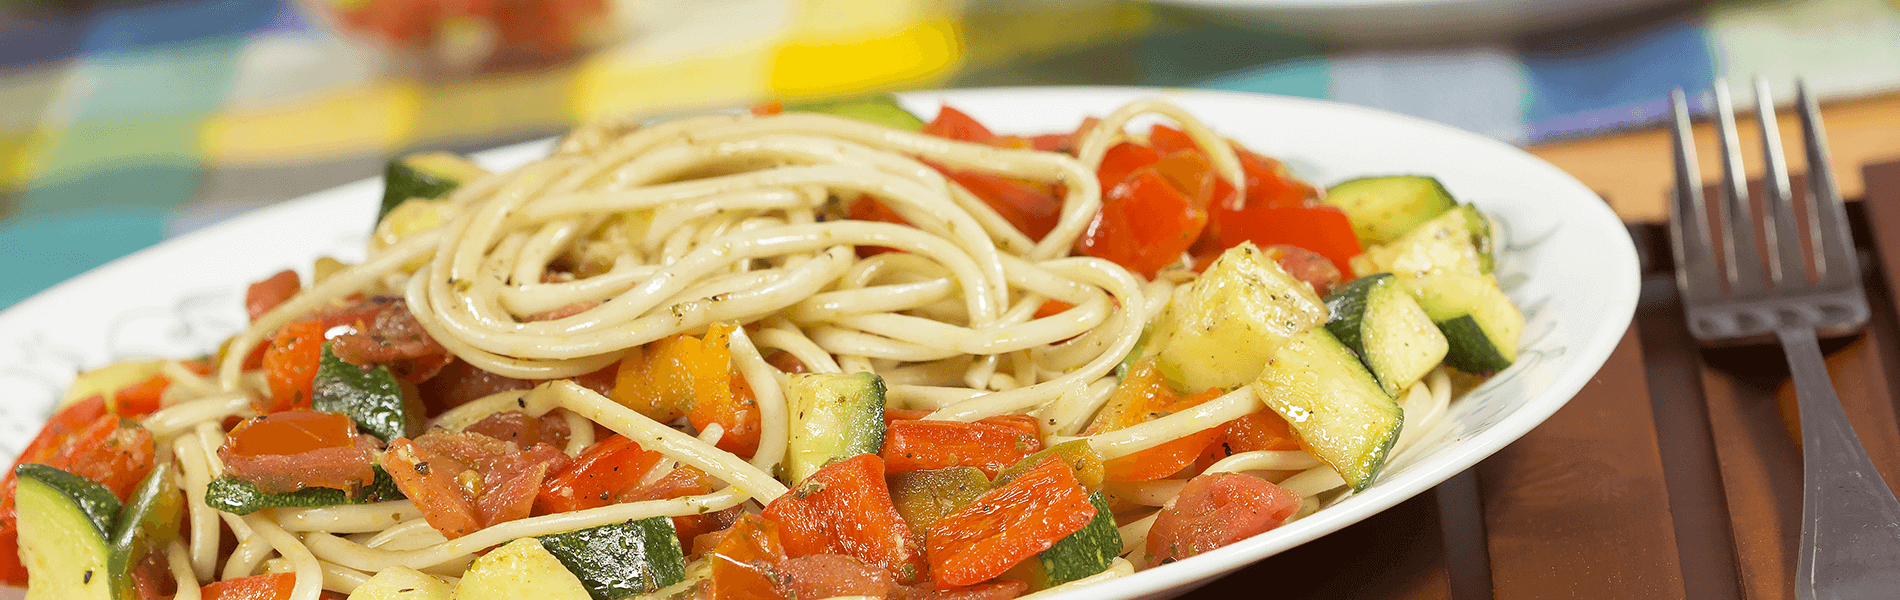 Spaghetti Doria con verduras asadas